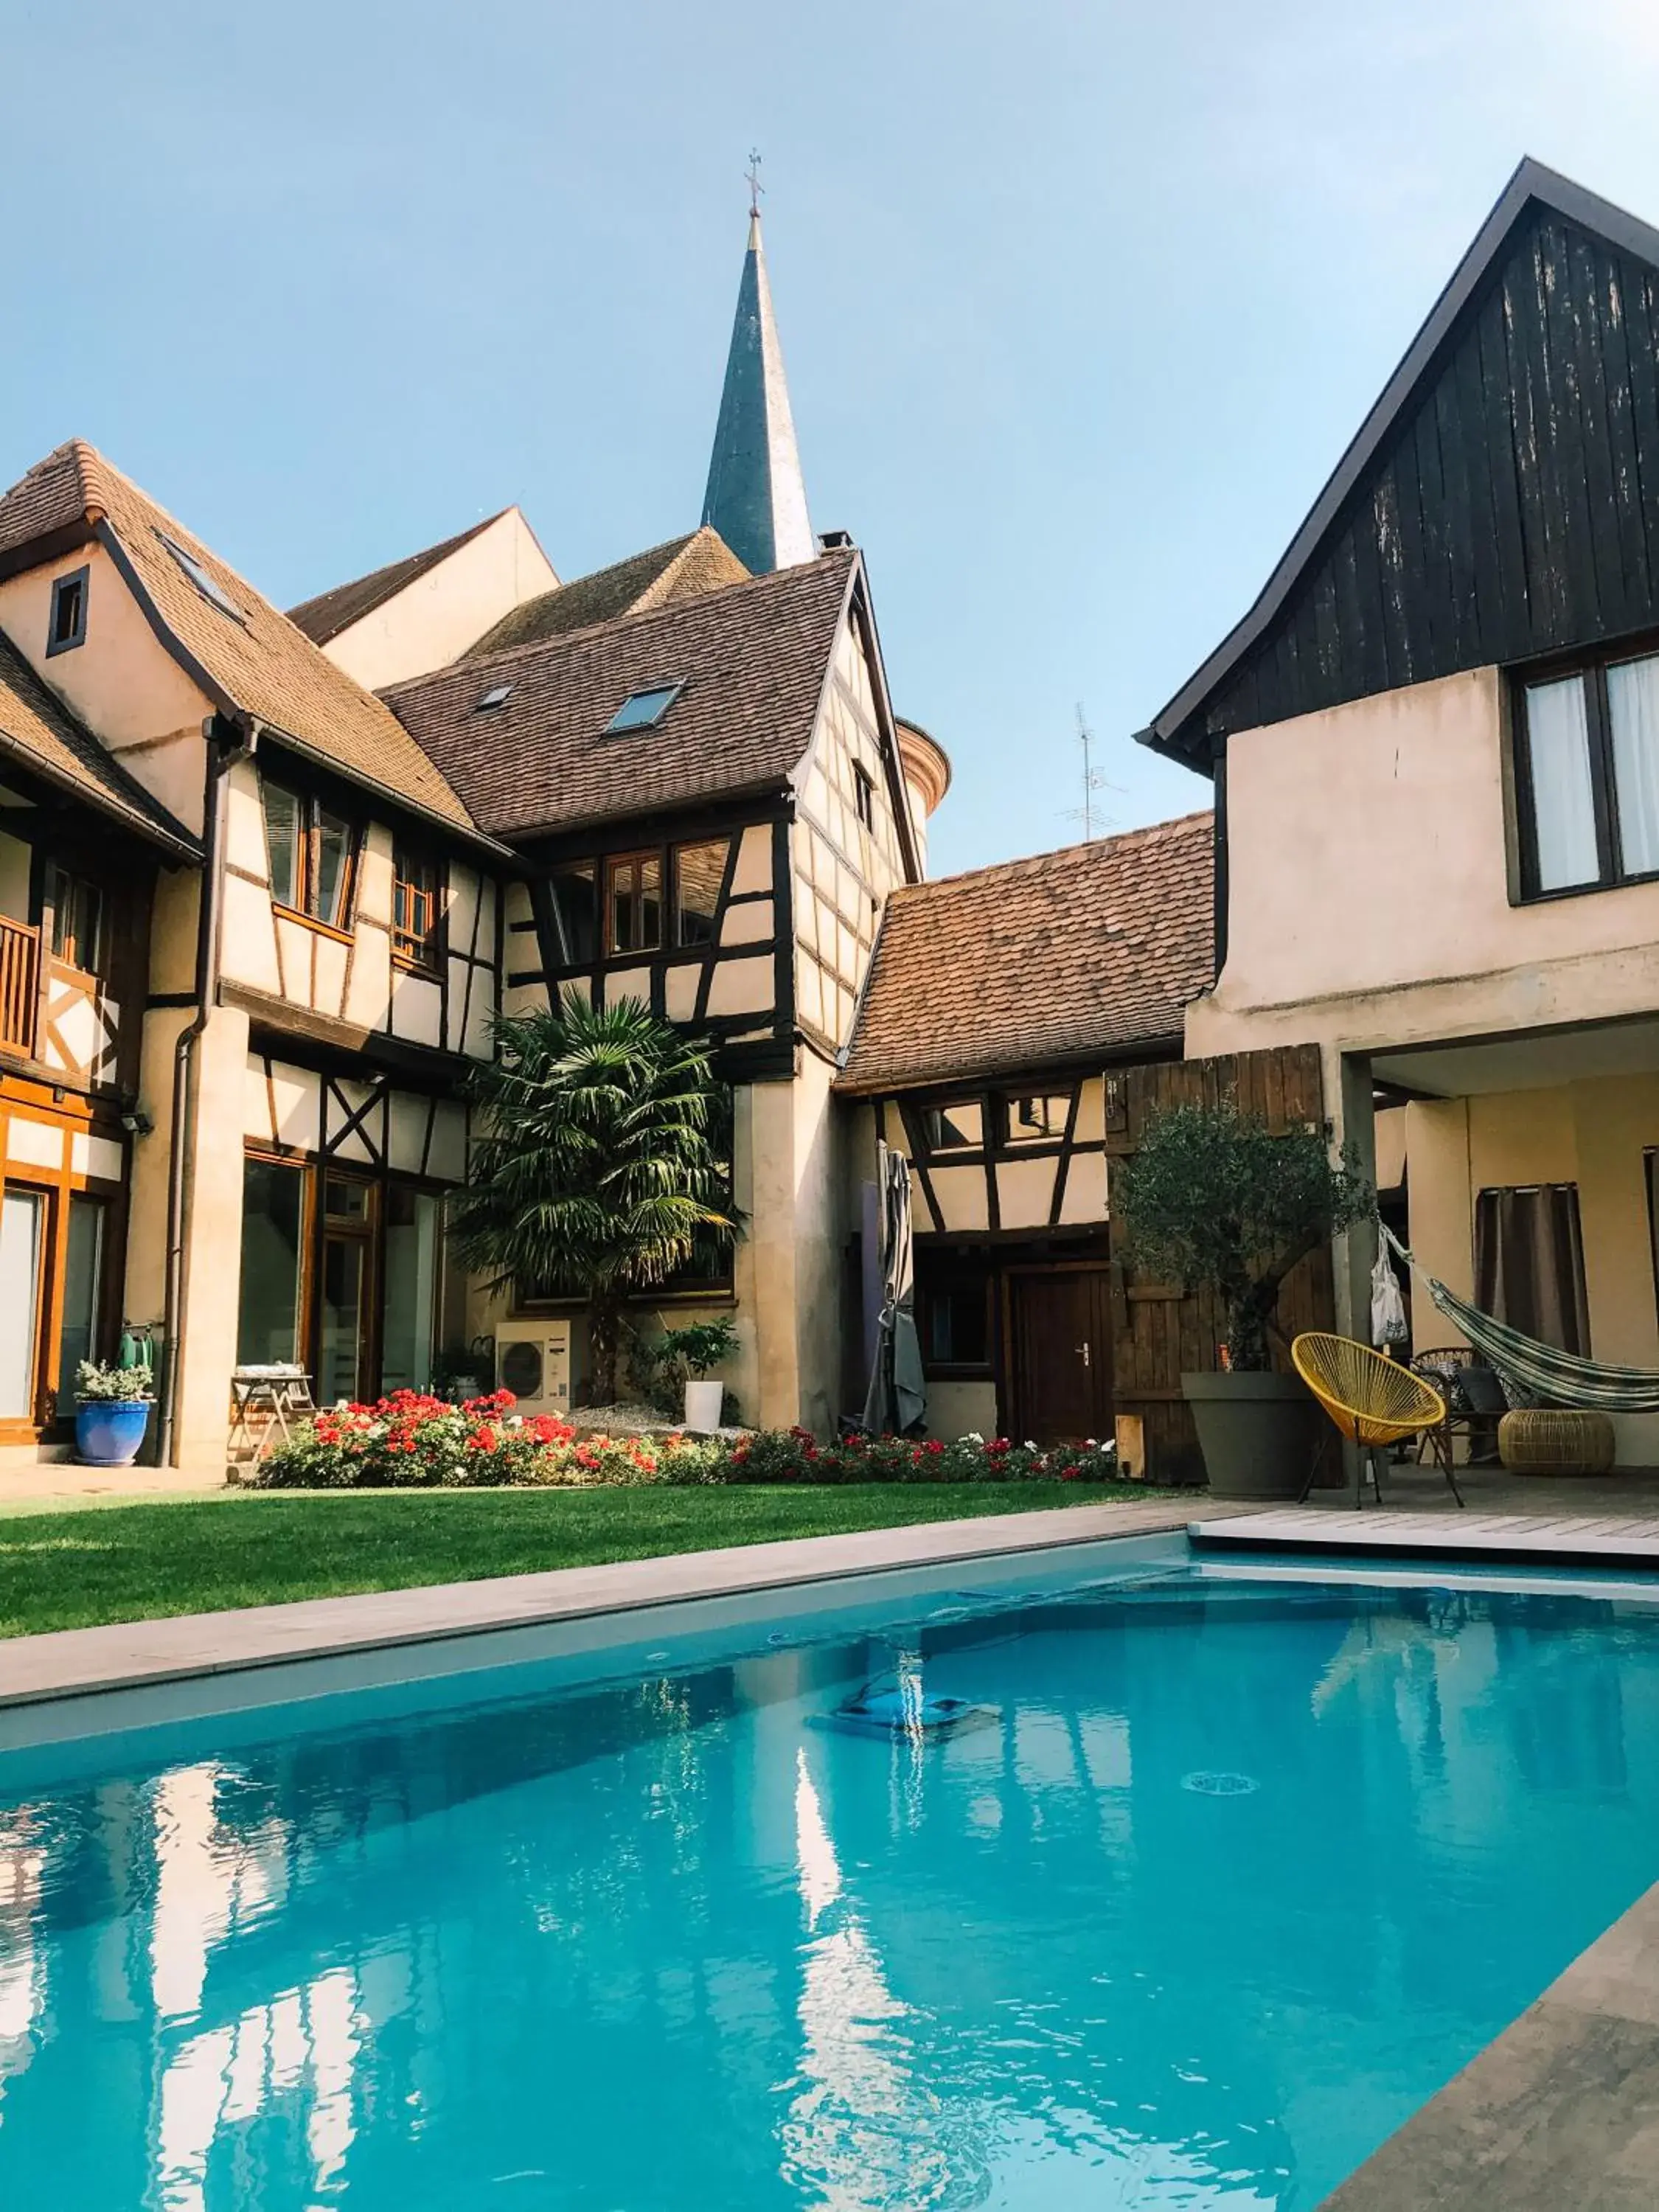 Swimming pool, Property Building in Maison d'hôtes La Rose d'Alsace